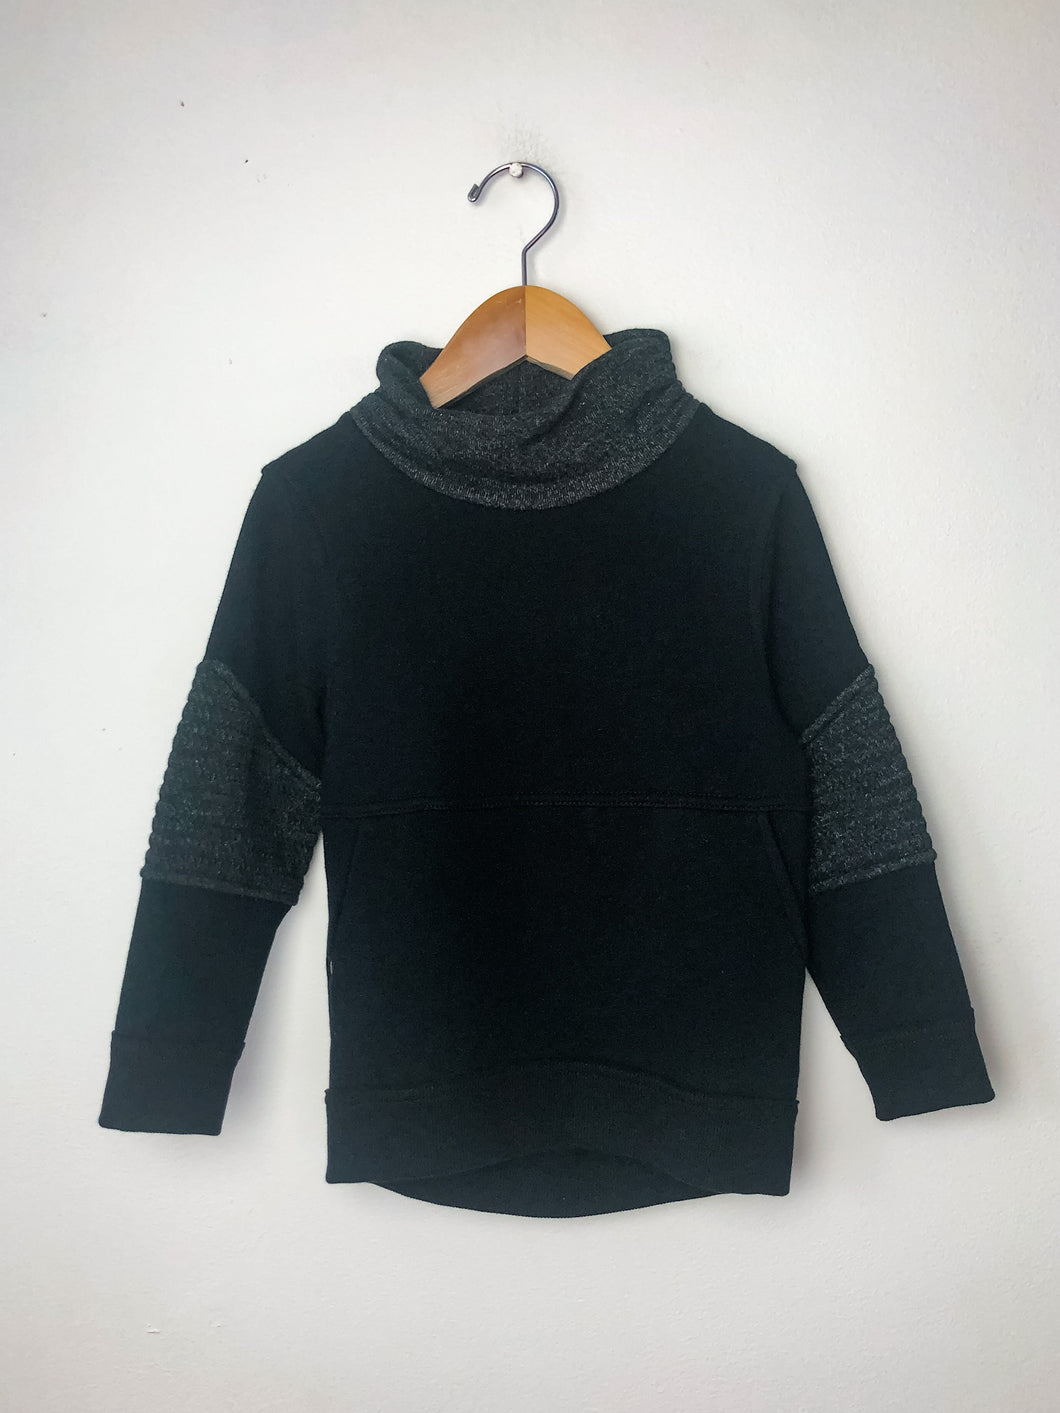 Black Oshkosh Sweater Size 4T